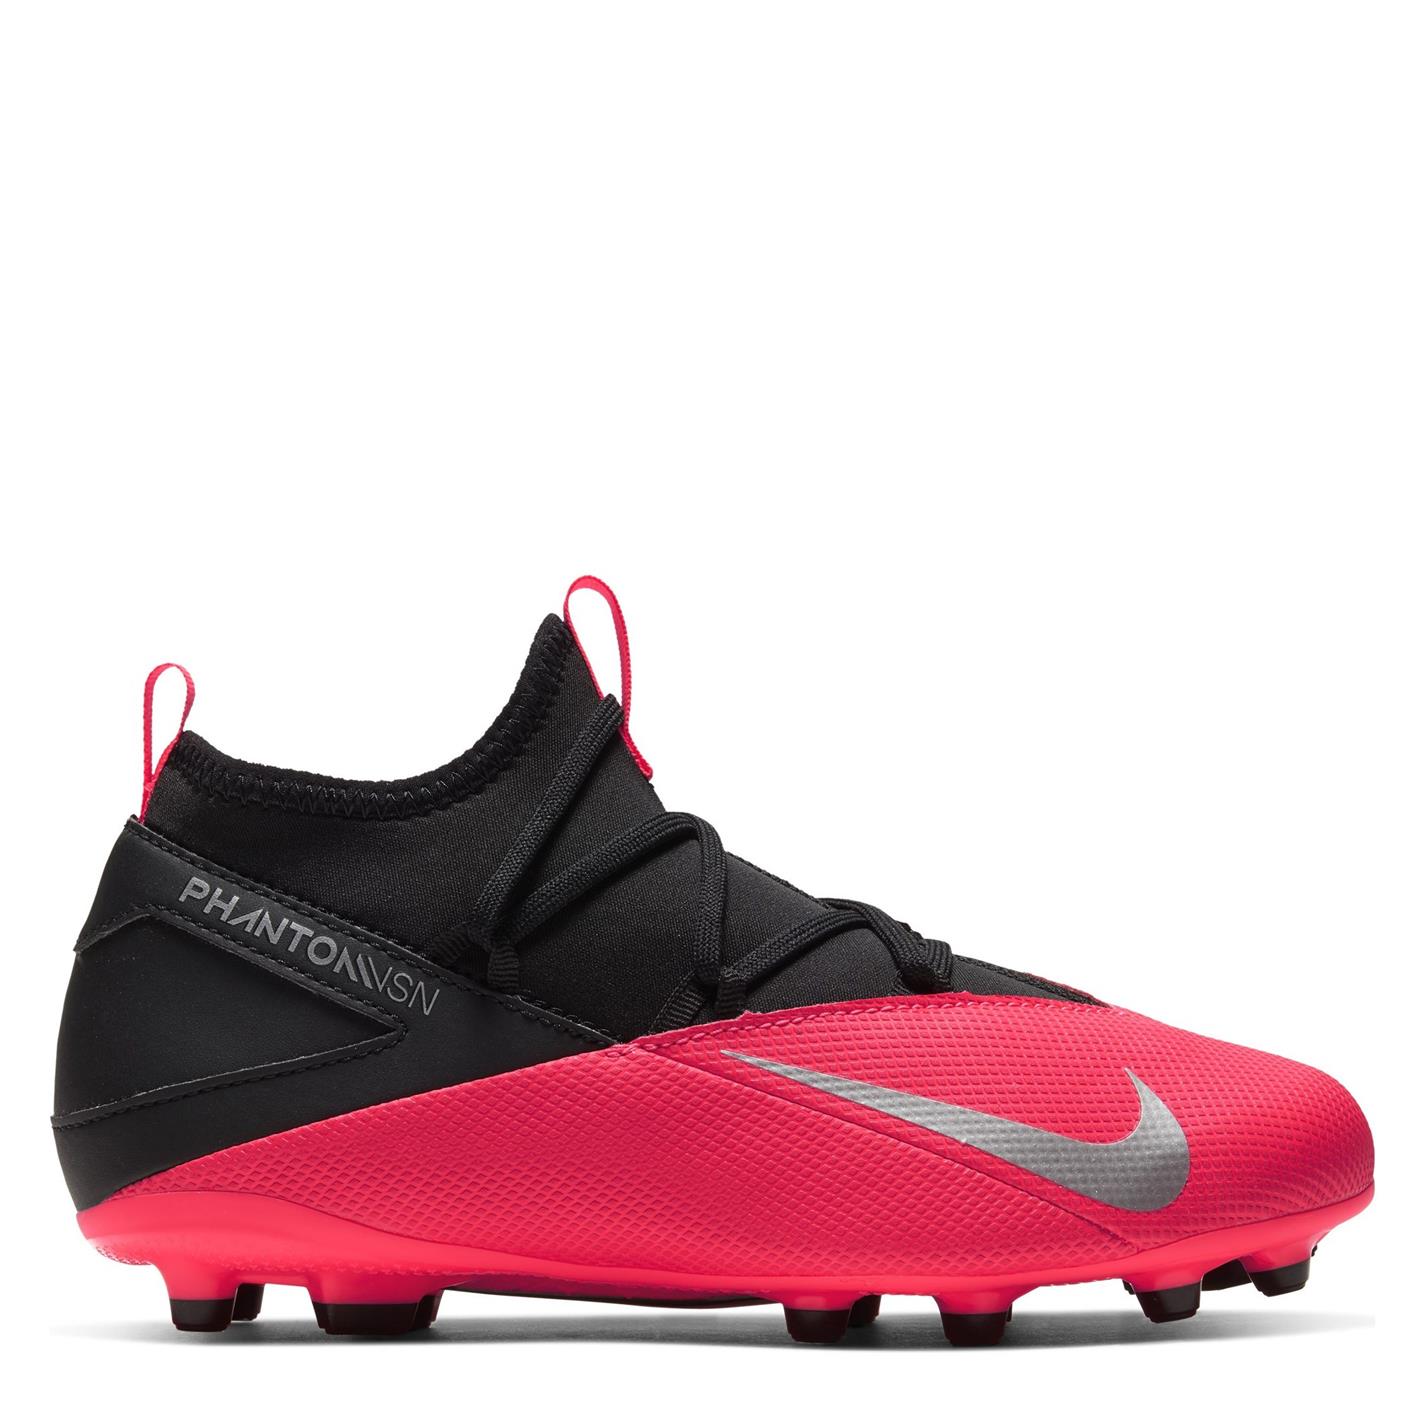 Ghete de fotbal Nike Phantom Vision Club DF FG pentru copii rosu inchis negru